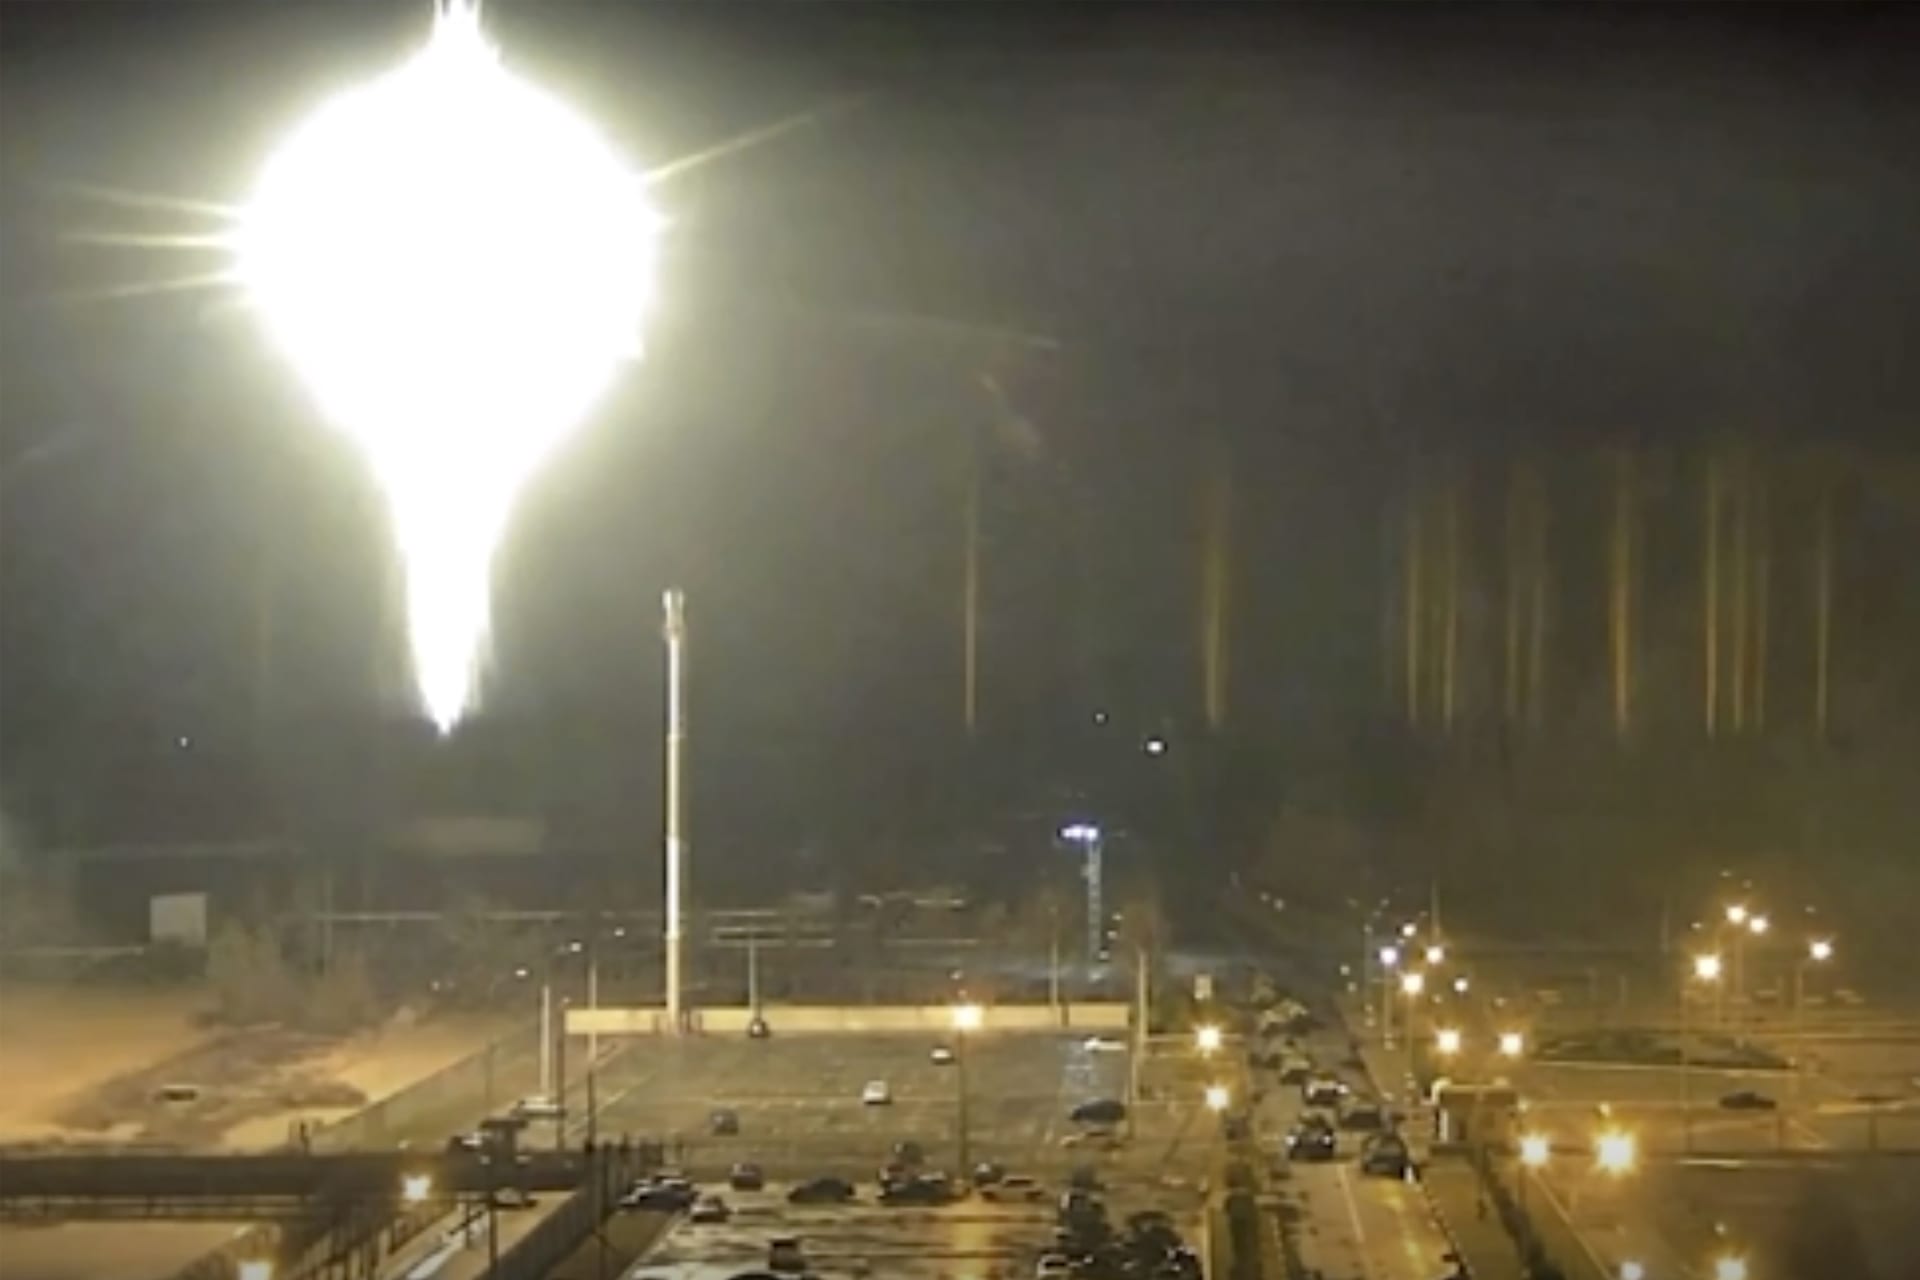 Snímek z videa zveřejněného záporožskou jadernou elektrárnou ukazuje jasný letící objekt, který přistál v areálu jaderné elektrárny v ukrajinském městě Enerhoda.